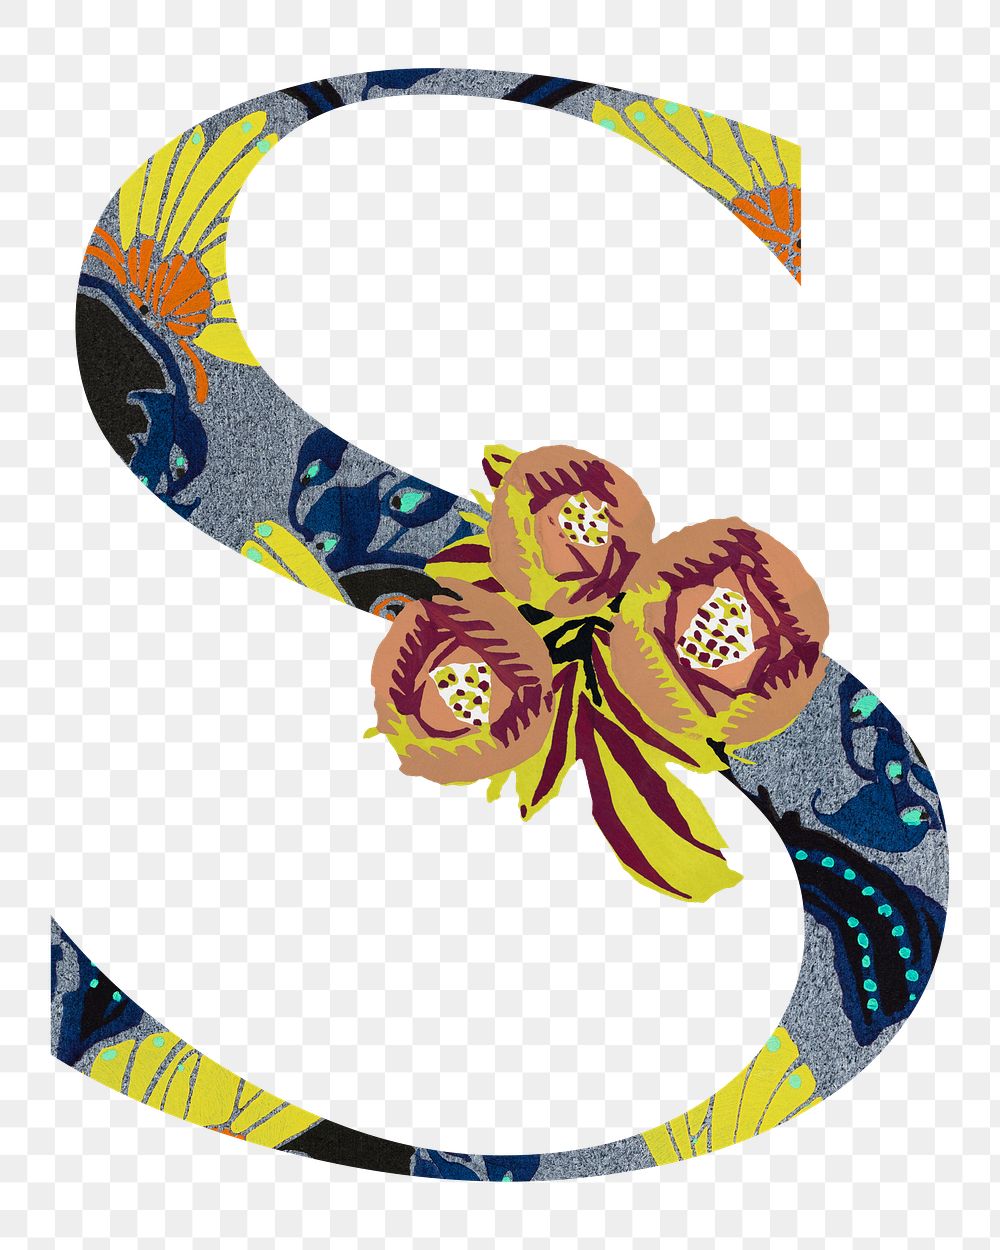 Letter S PNG in Seguy Papillons art alphabet illustration, transparent background